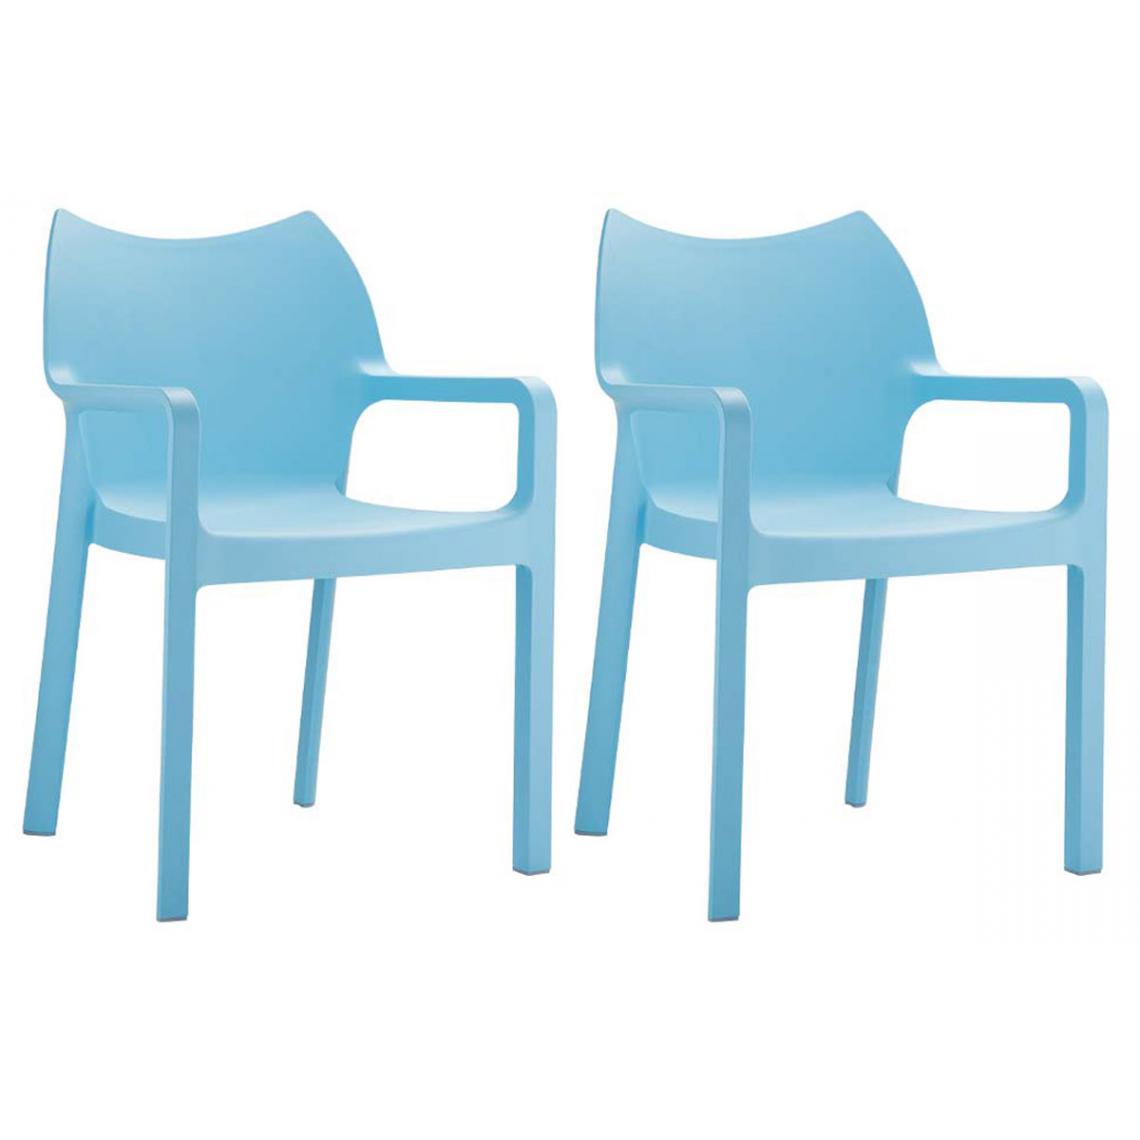 Icaverne - Superbe SET de 2 chaises empilables ligne Naypyidaw couleur Bleu clair - Tabourets